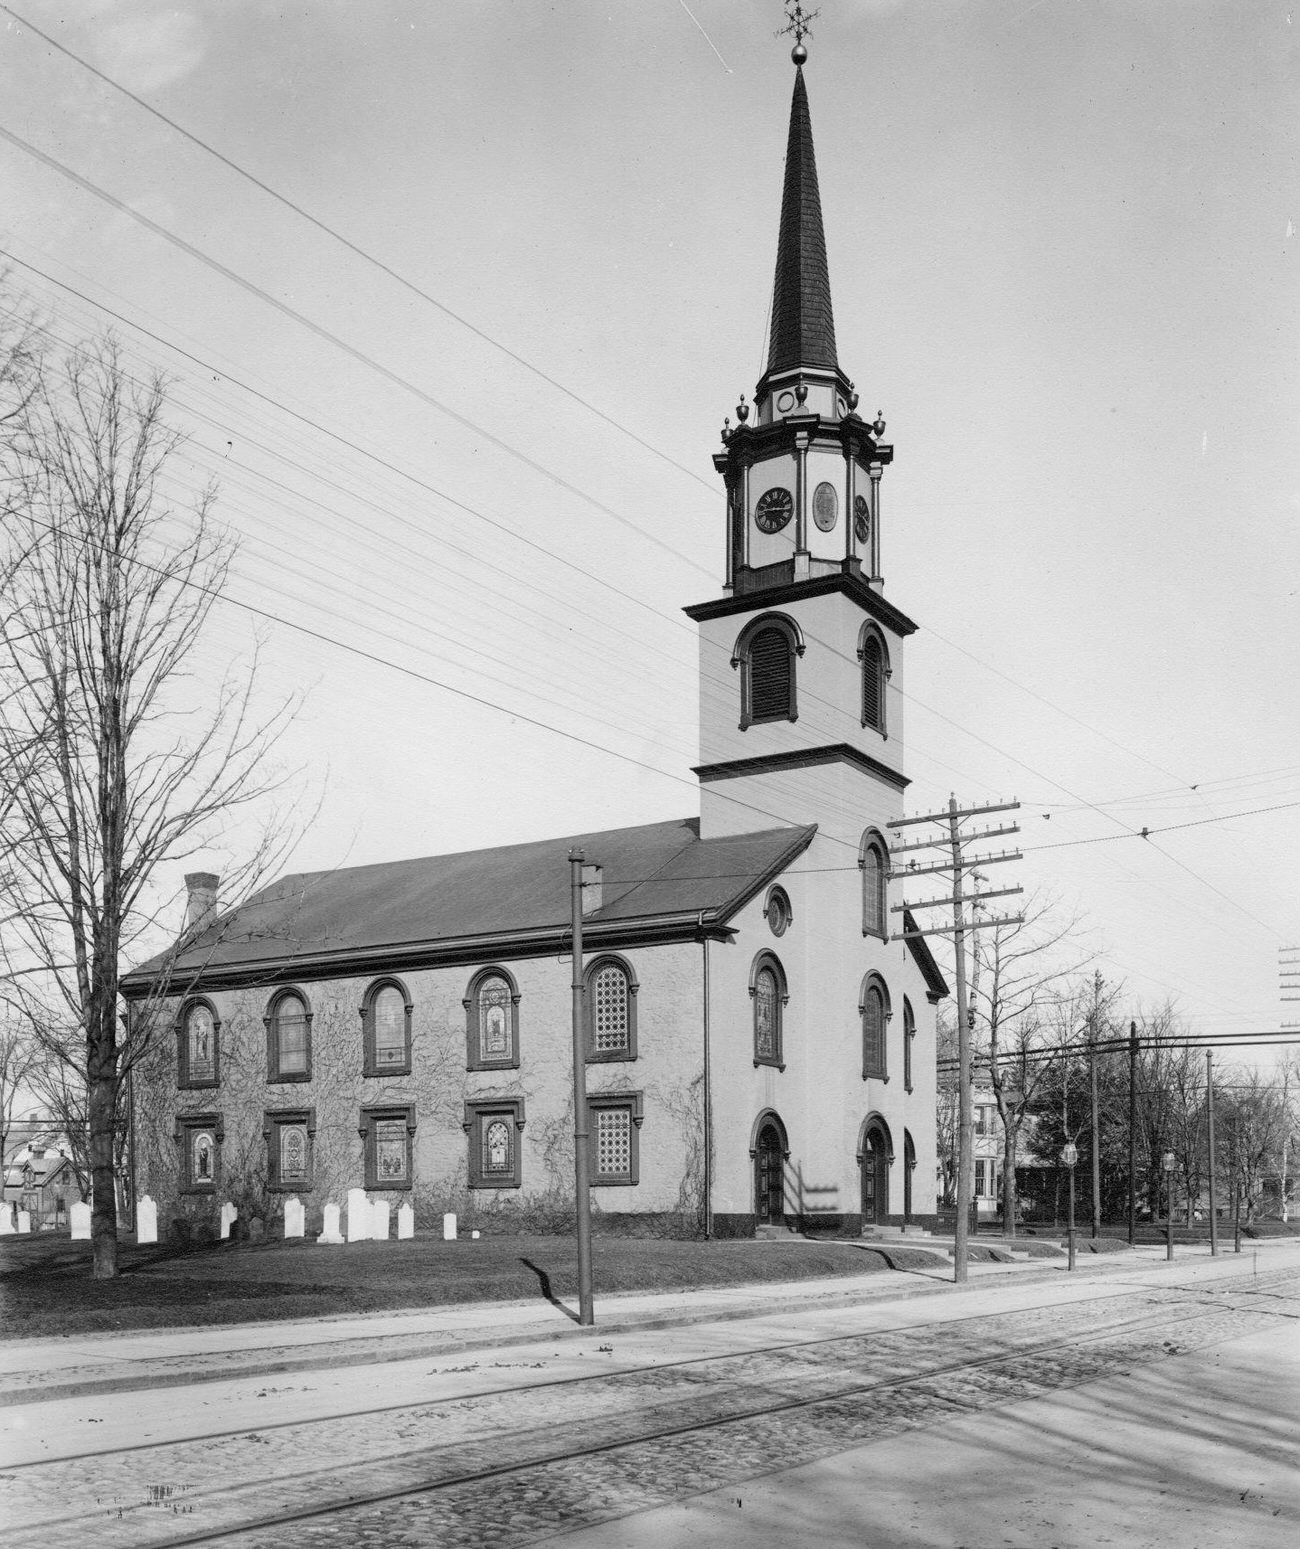 Flatbush Reformed Church At Flatbush Avenue And Church Lane, Brooklyn, 1895